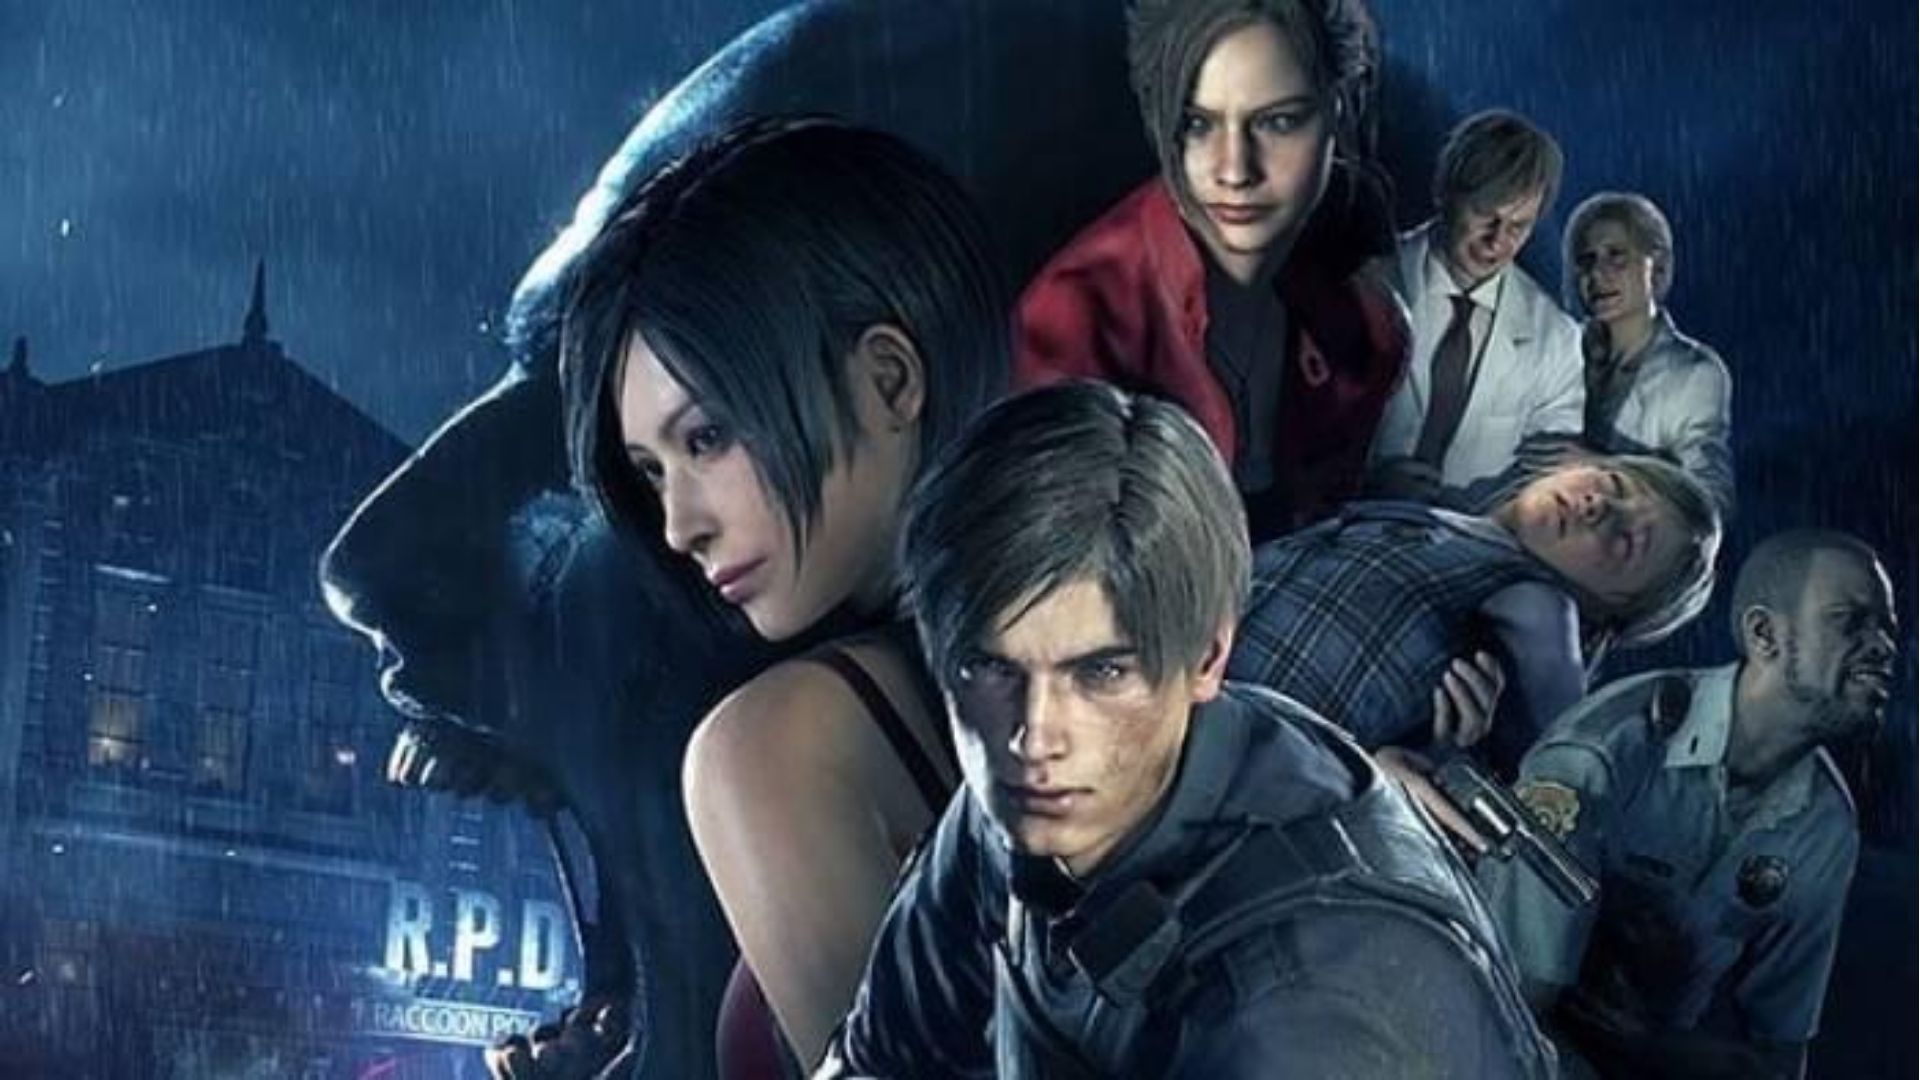 Esse jogo é melhor que Resident Evil 7 de acordo com o Metacritic? - 14 - Devil  May Cry 3 é melhor que Resident Evil 7 de acordo com o Metacritic? NÃO.